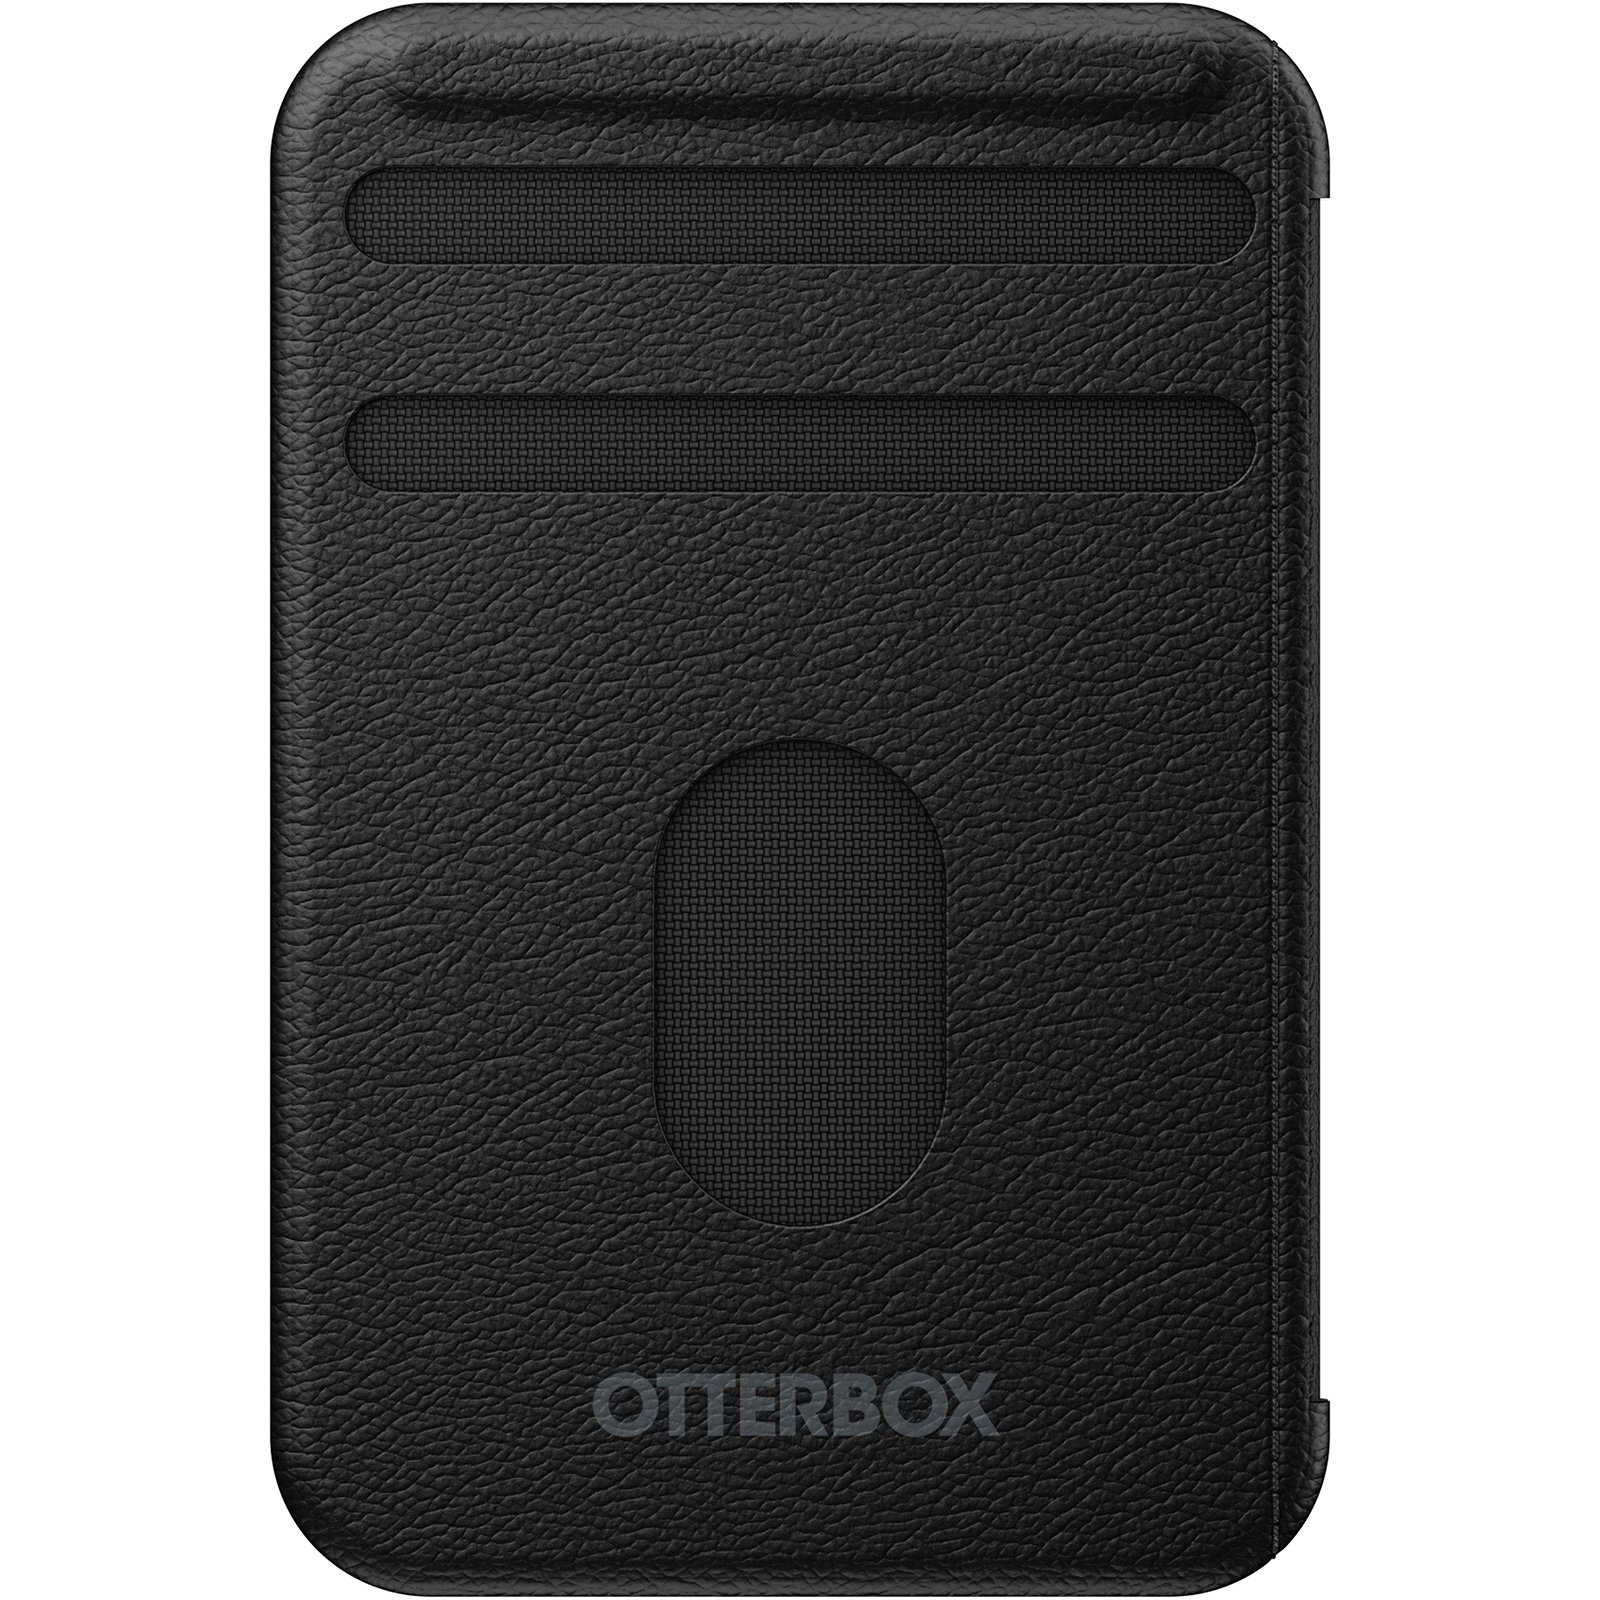 Otterbox OTTERBOX - Handyhalterung für MagSafe, …